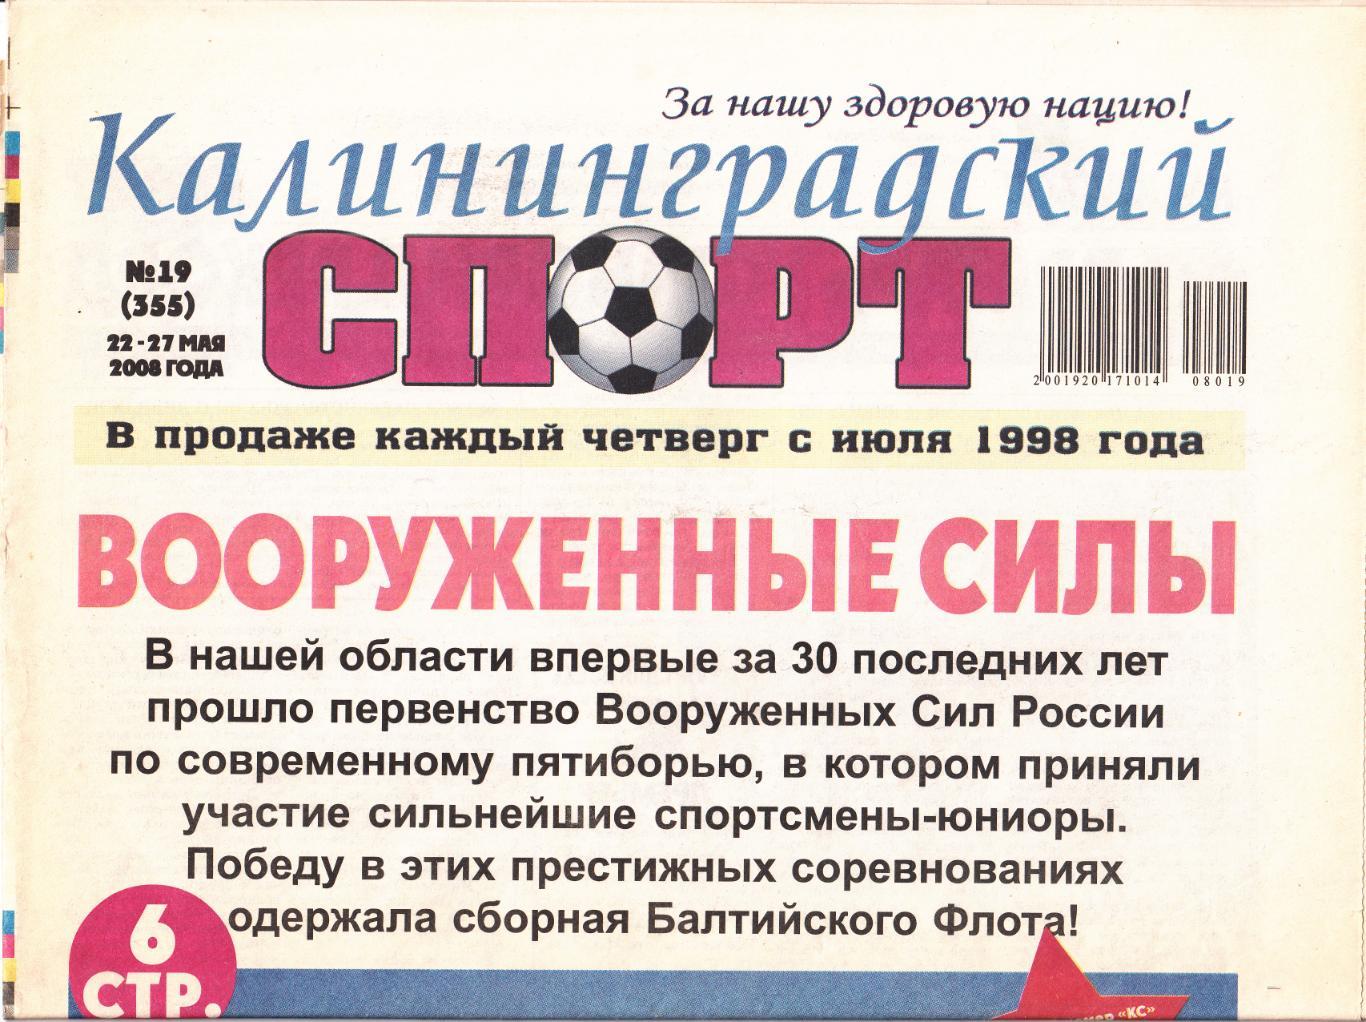 Калининградский спорт № 19 2008 2 обзора матчей Балтики ( см. описание)